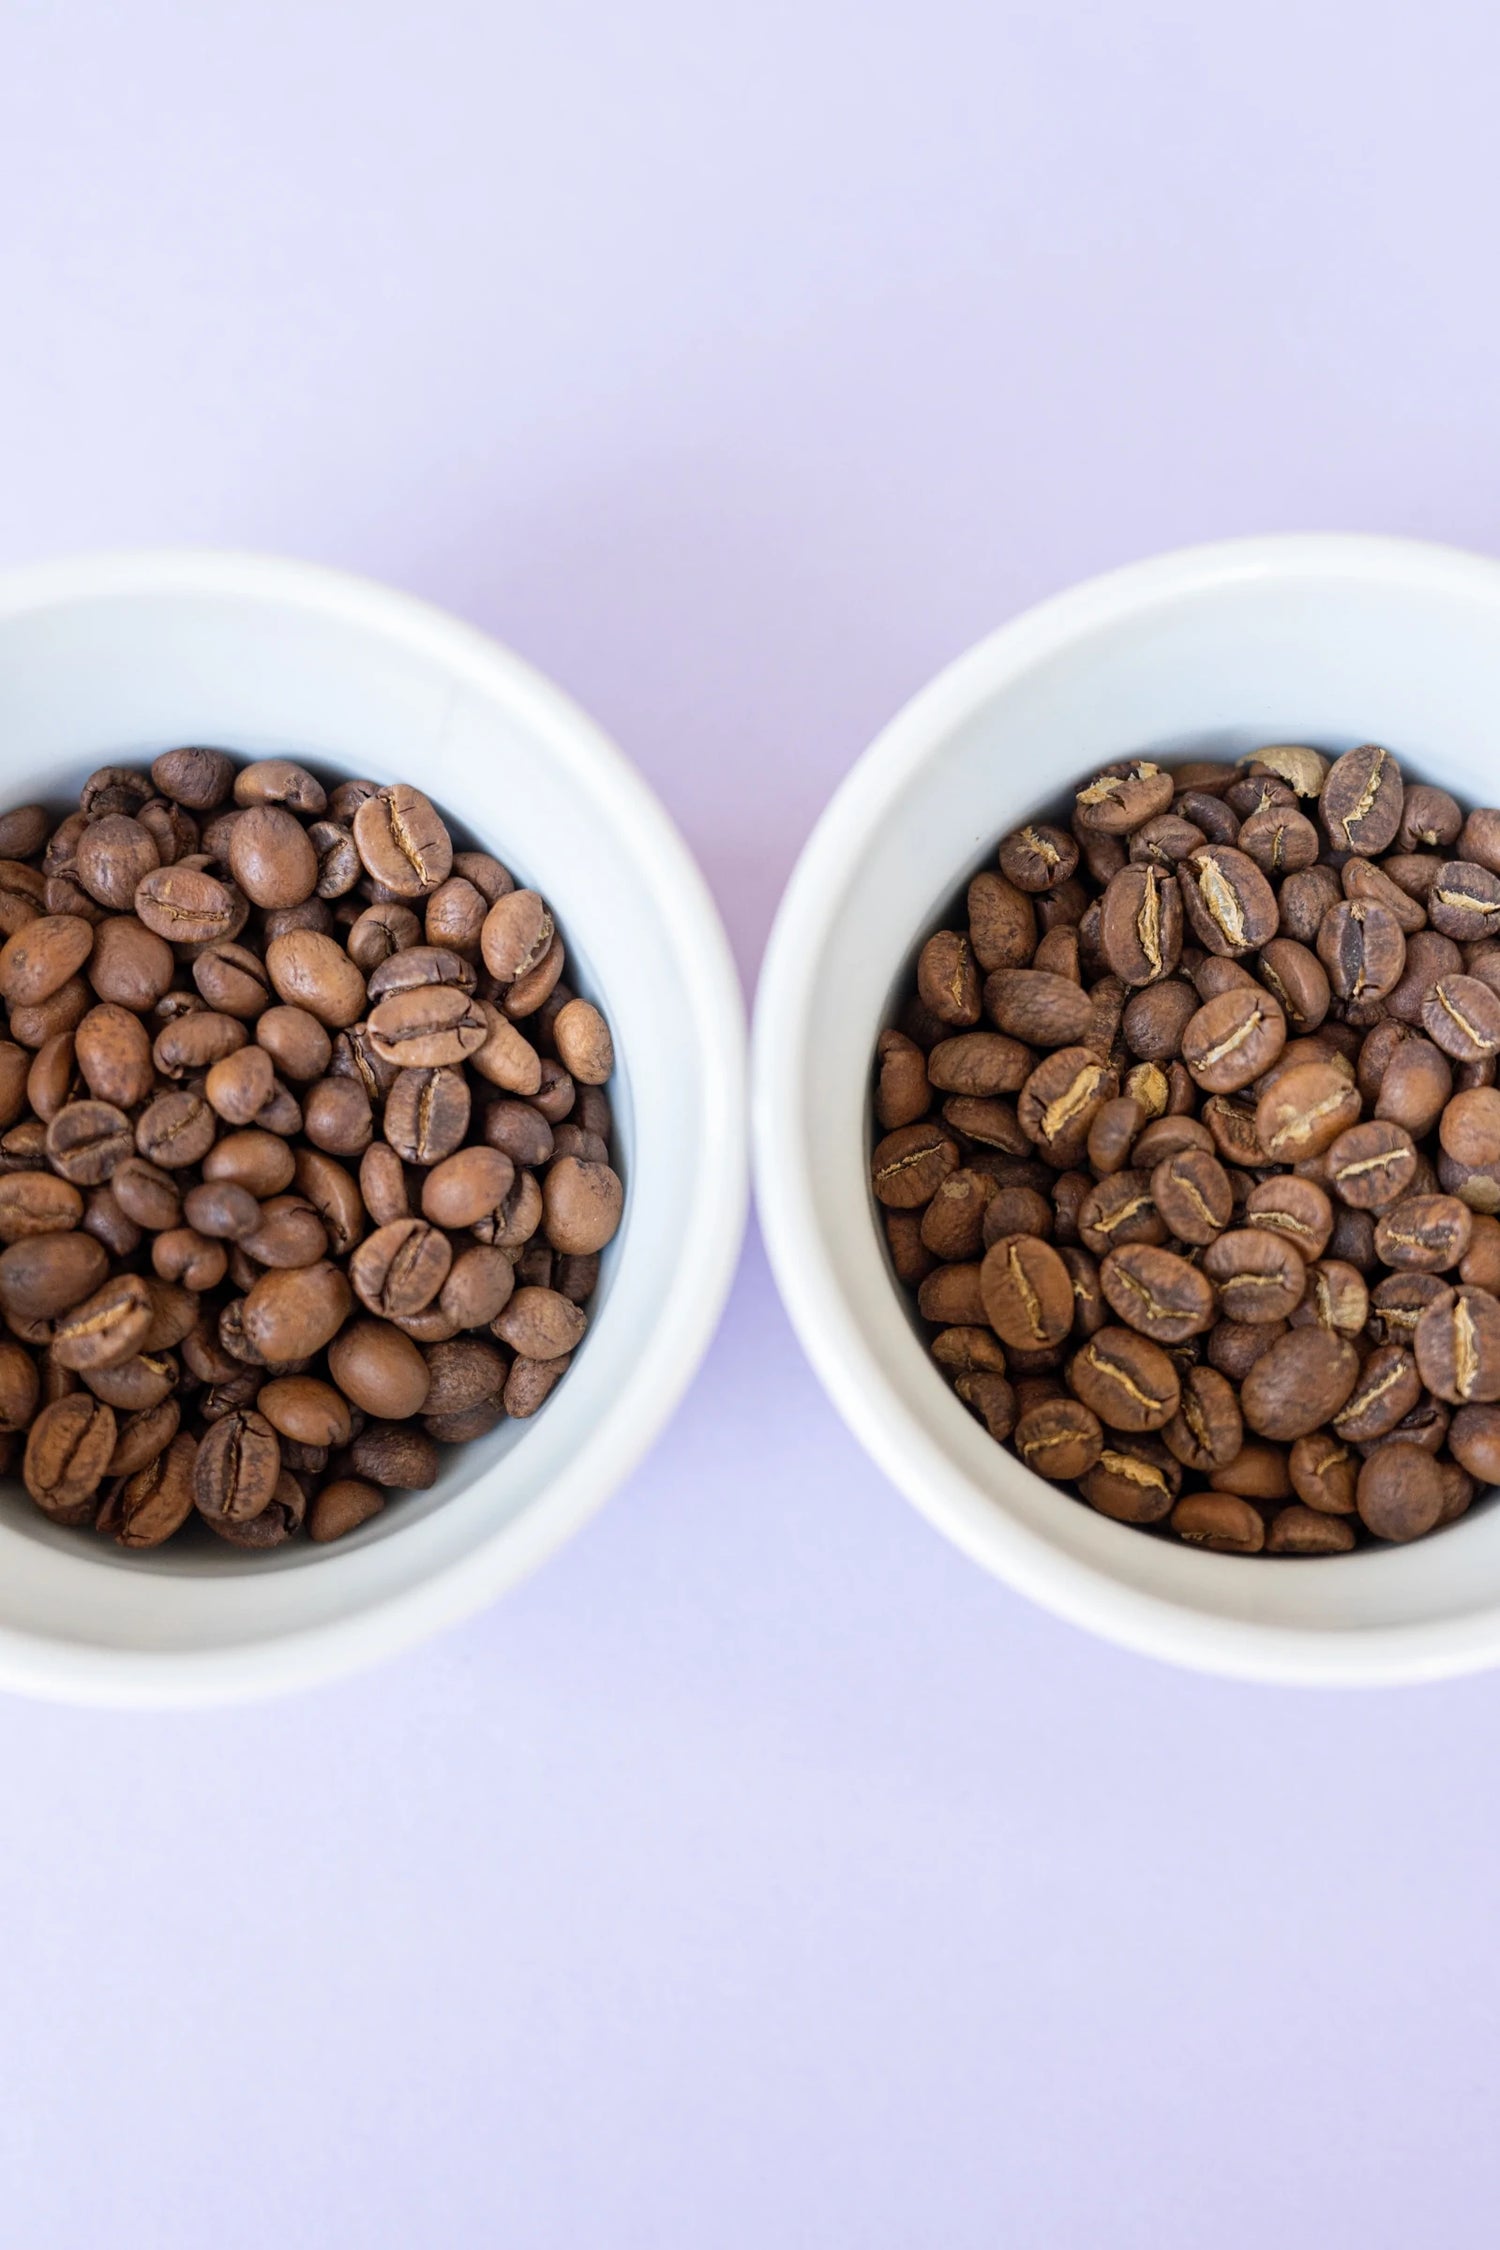 Enthalten dunklere Röstungen mehr Koffein?